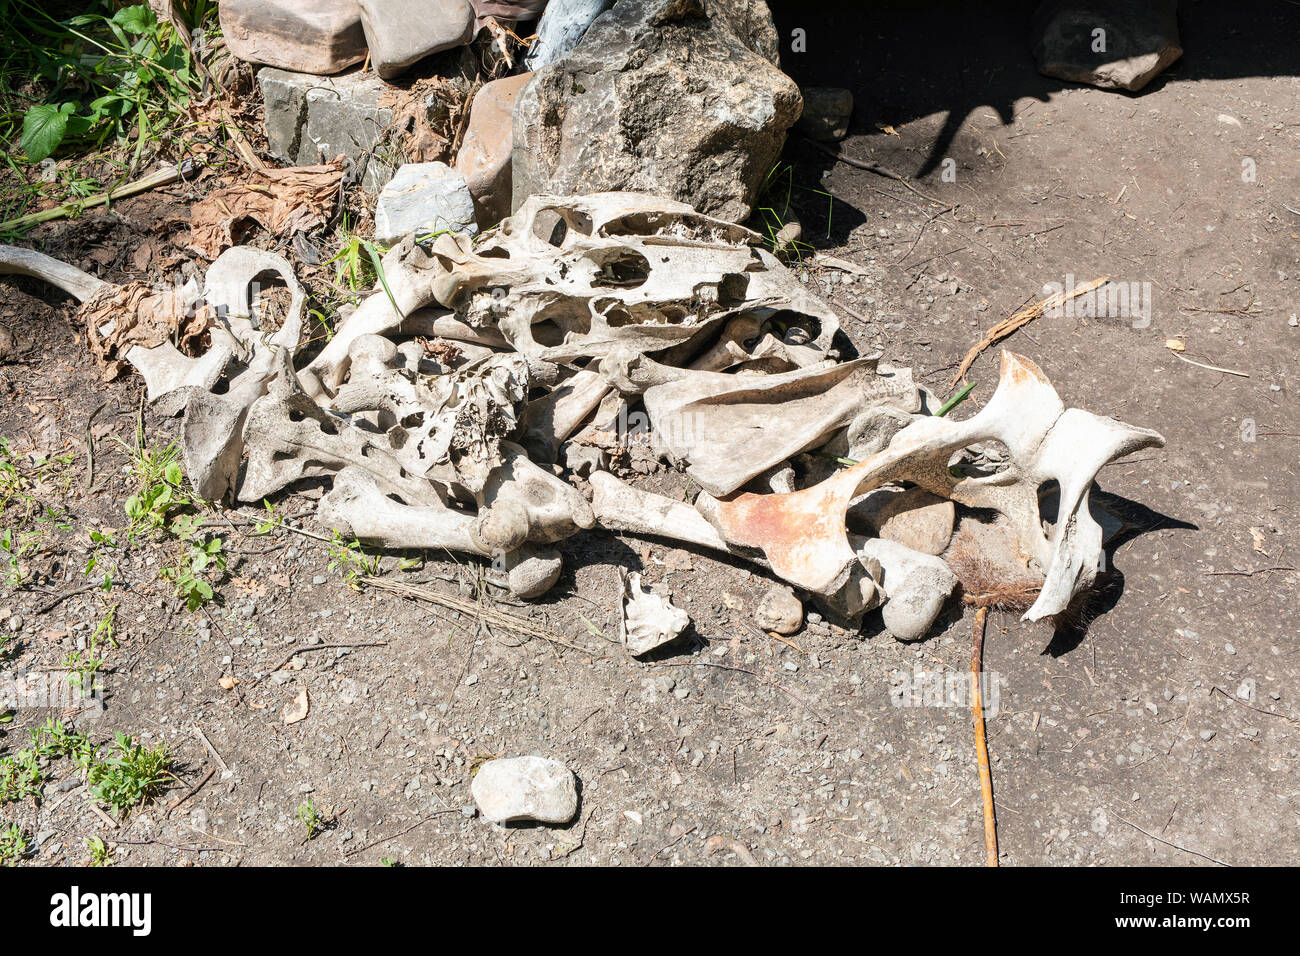 Ein Haufen Tierknochen als Teil der Ausstellung über das Leben der alten Menschen in der Steinzeit Stockfoto